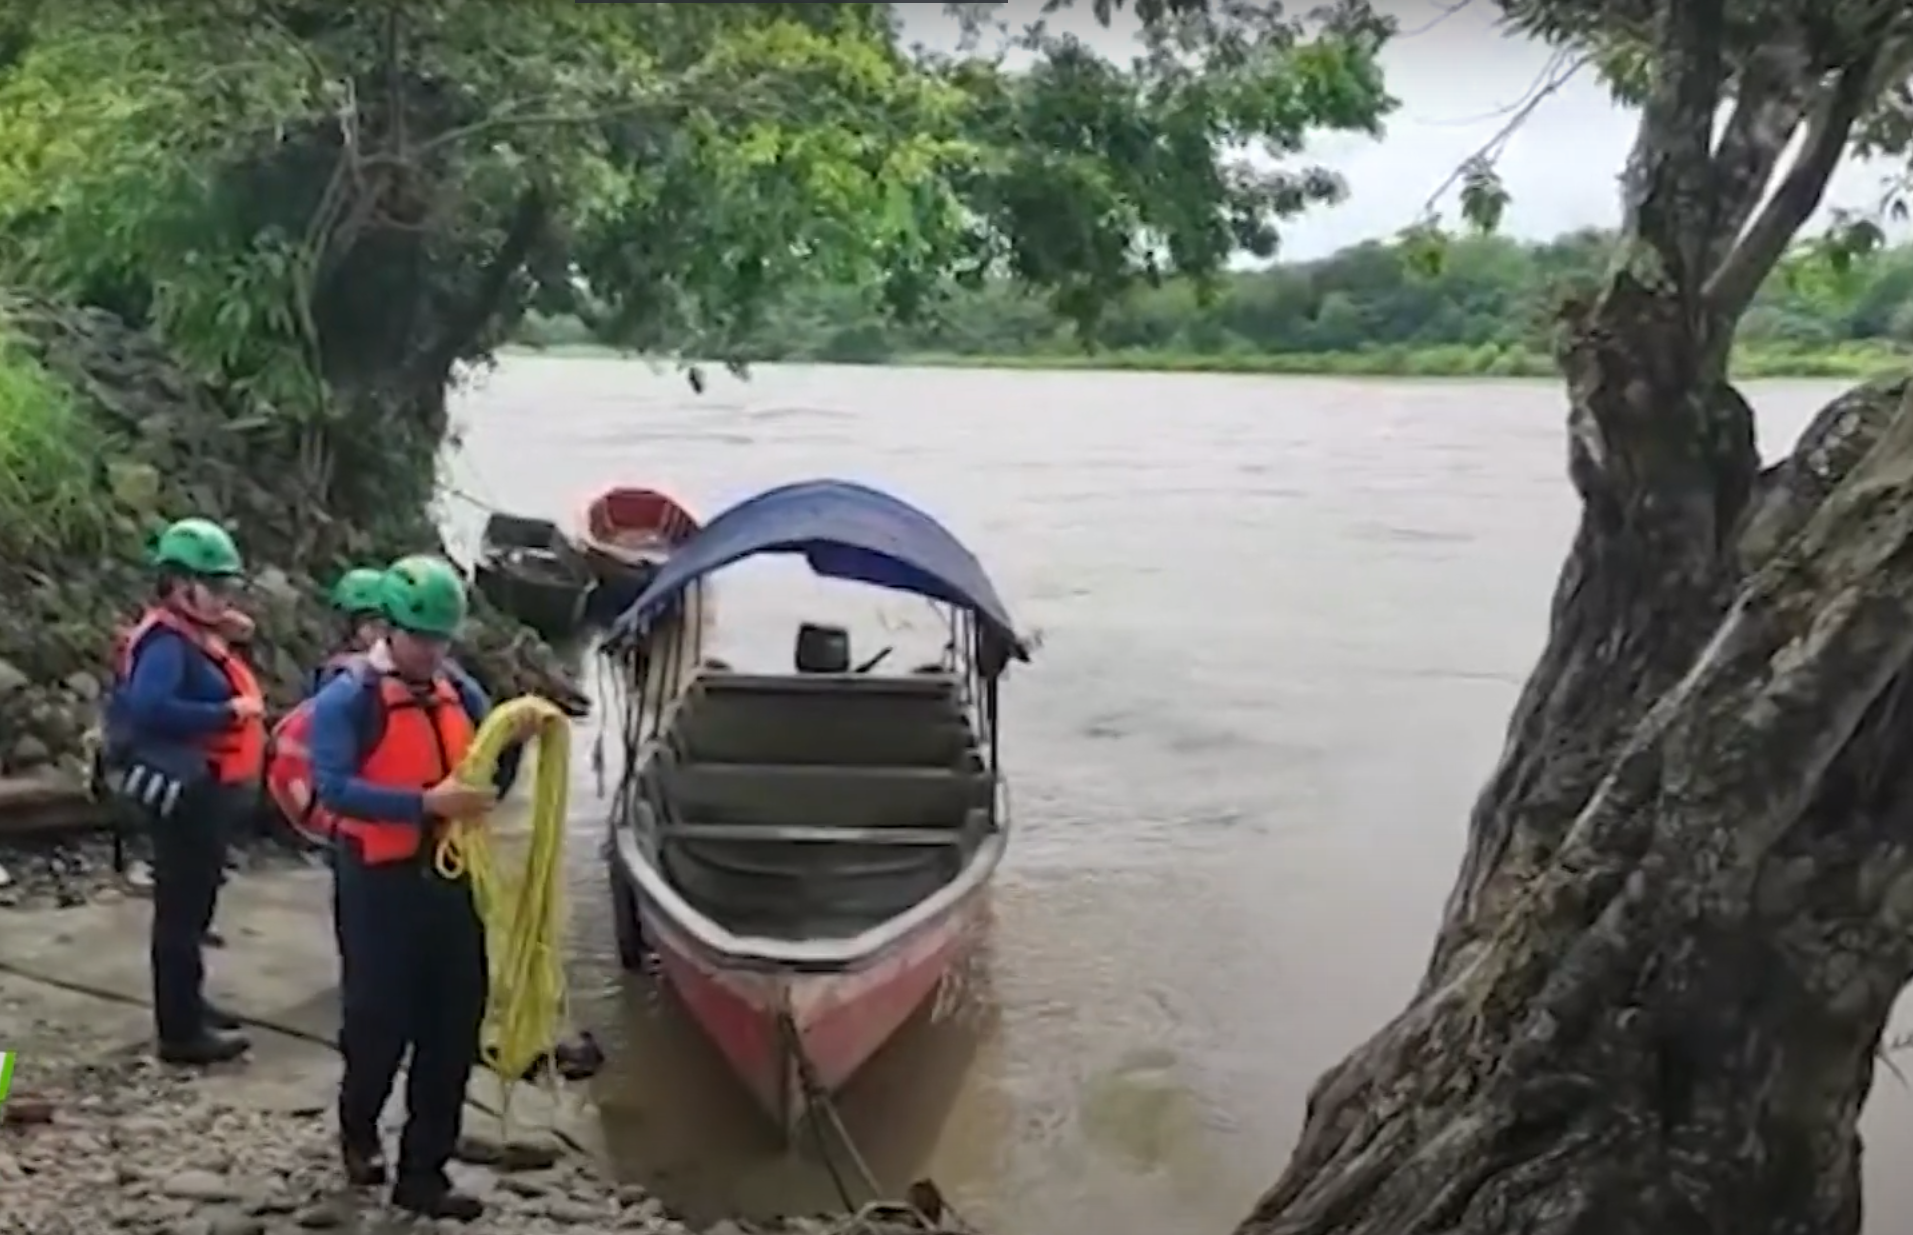 Buscan contratista que cayó al río Cauca